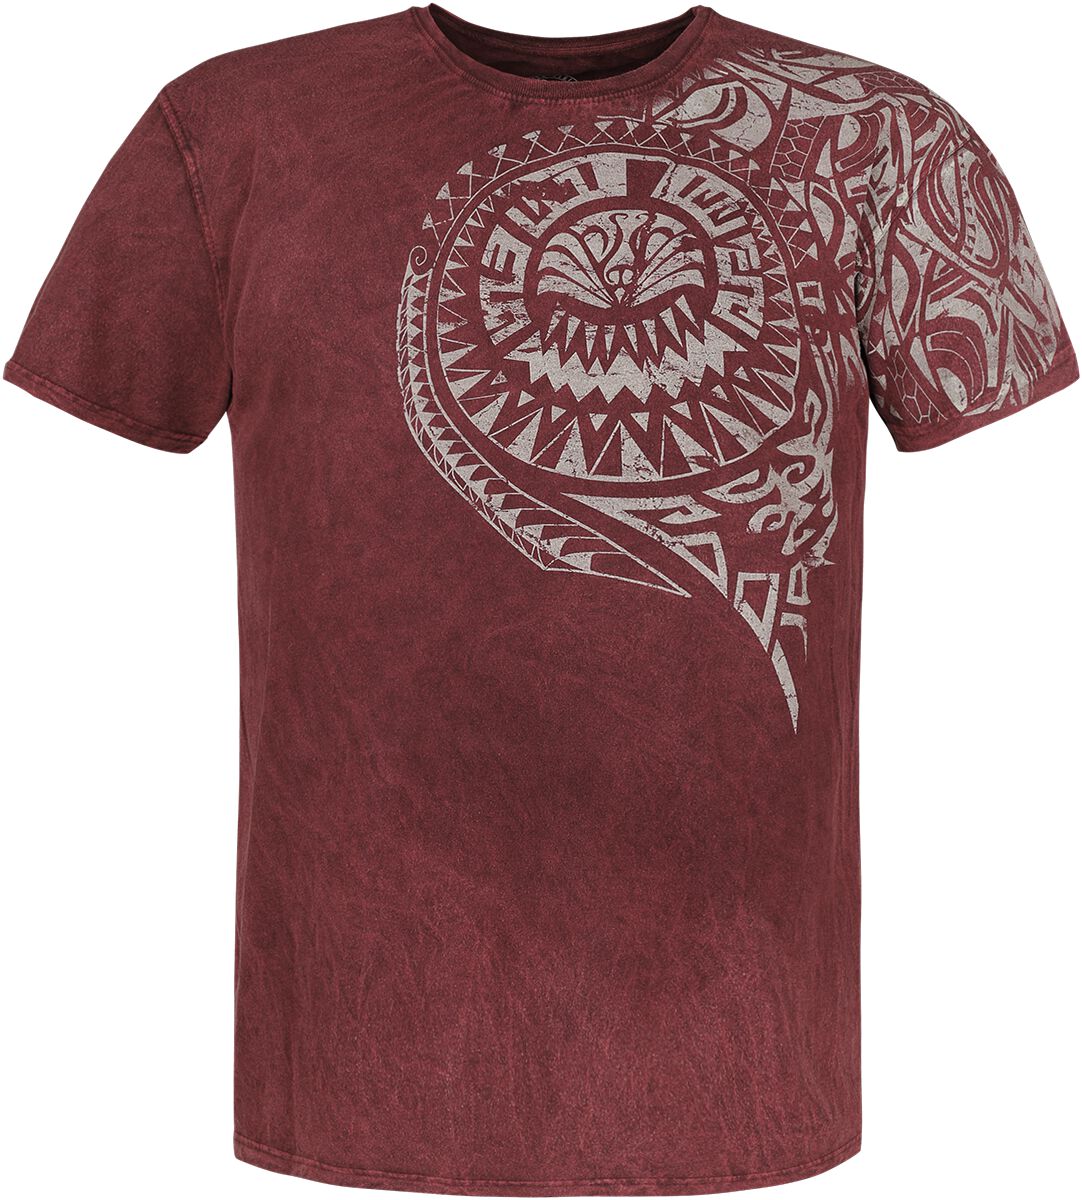 T-Shirt Manches courtes de Outer Vision - Burned Tattoo - S à M - pour Homme - rouge